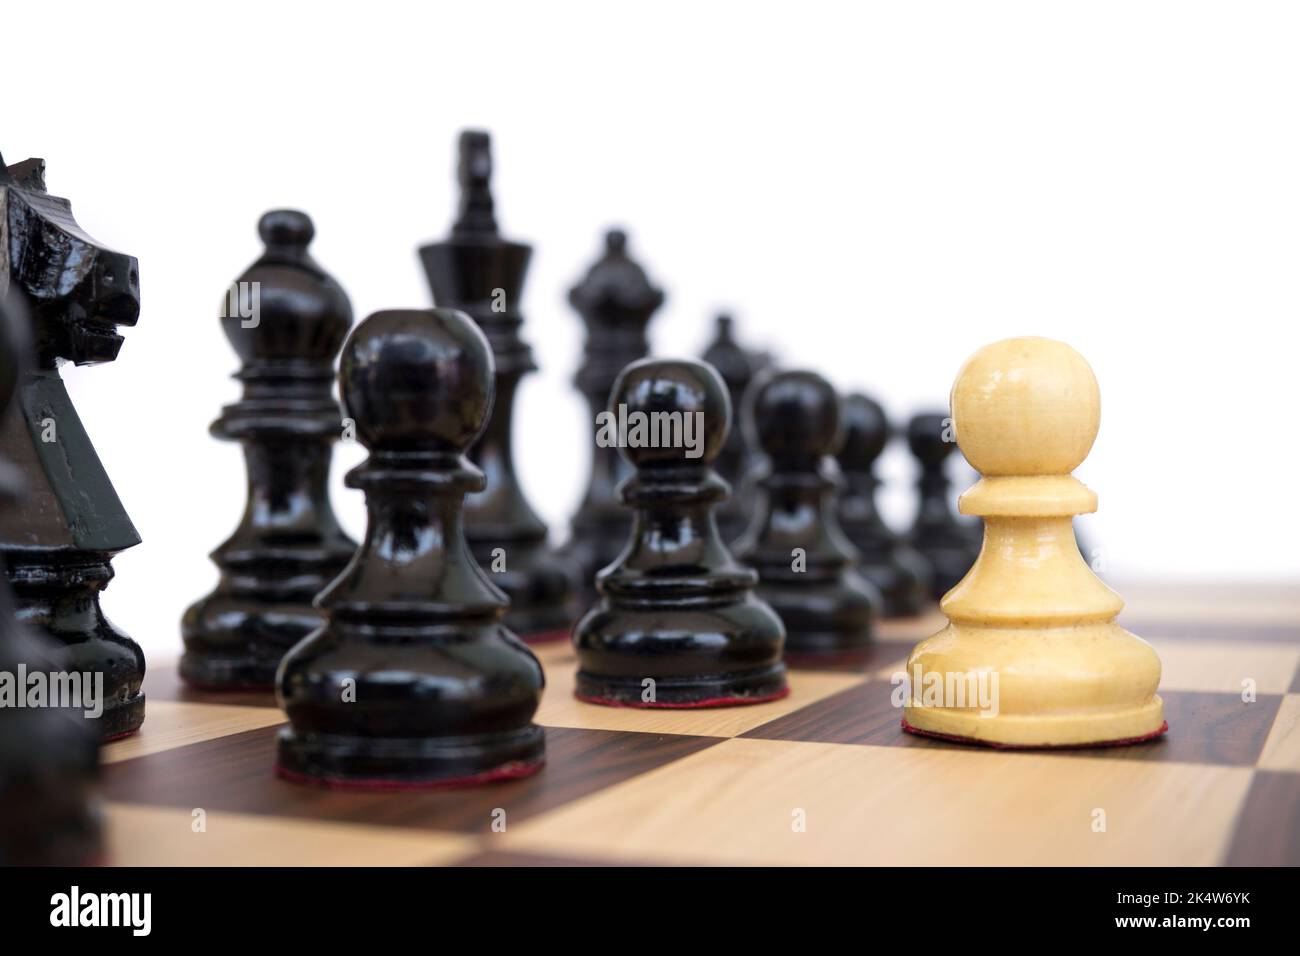 Das Konzept eines Soldaten, der allein vorrückt, um mit dem Feind zu verhandeln, zeigt, dass das weiße Schachspiel allein vor dem Feind steht. Stockfoto